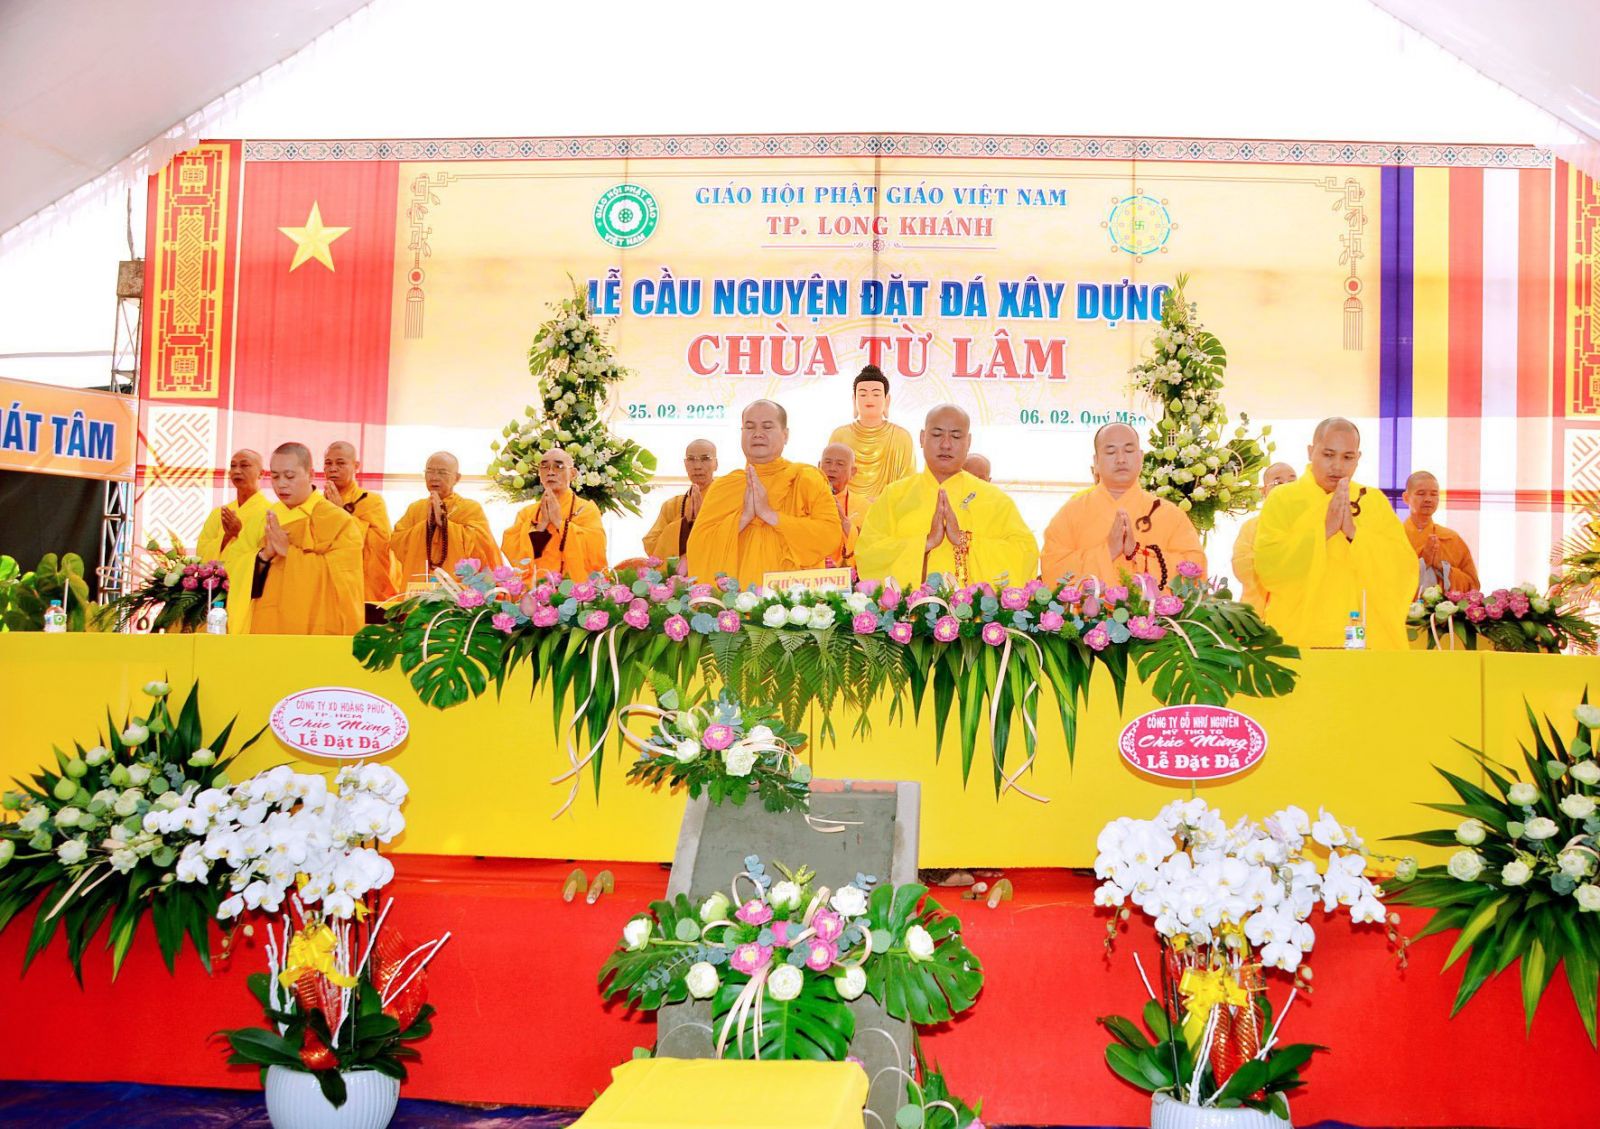 
Đồng Nai: Lễ Đặt đá trùng tu chùa Từ Lâm tại thành phố Long Khánh 